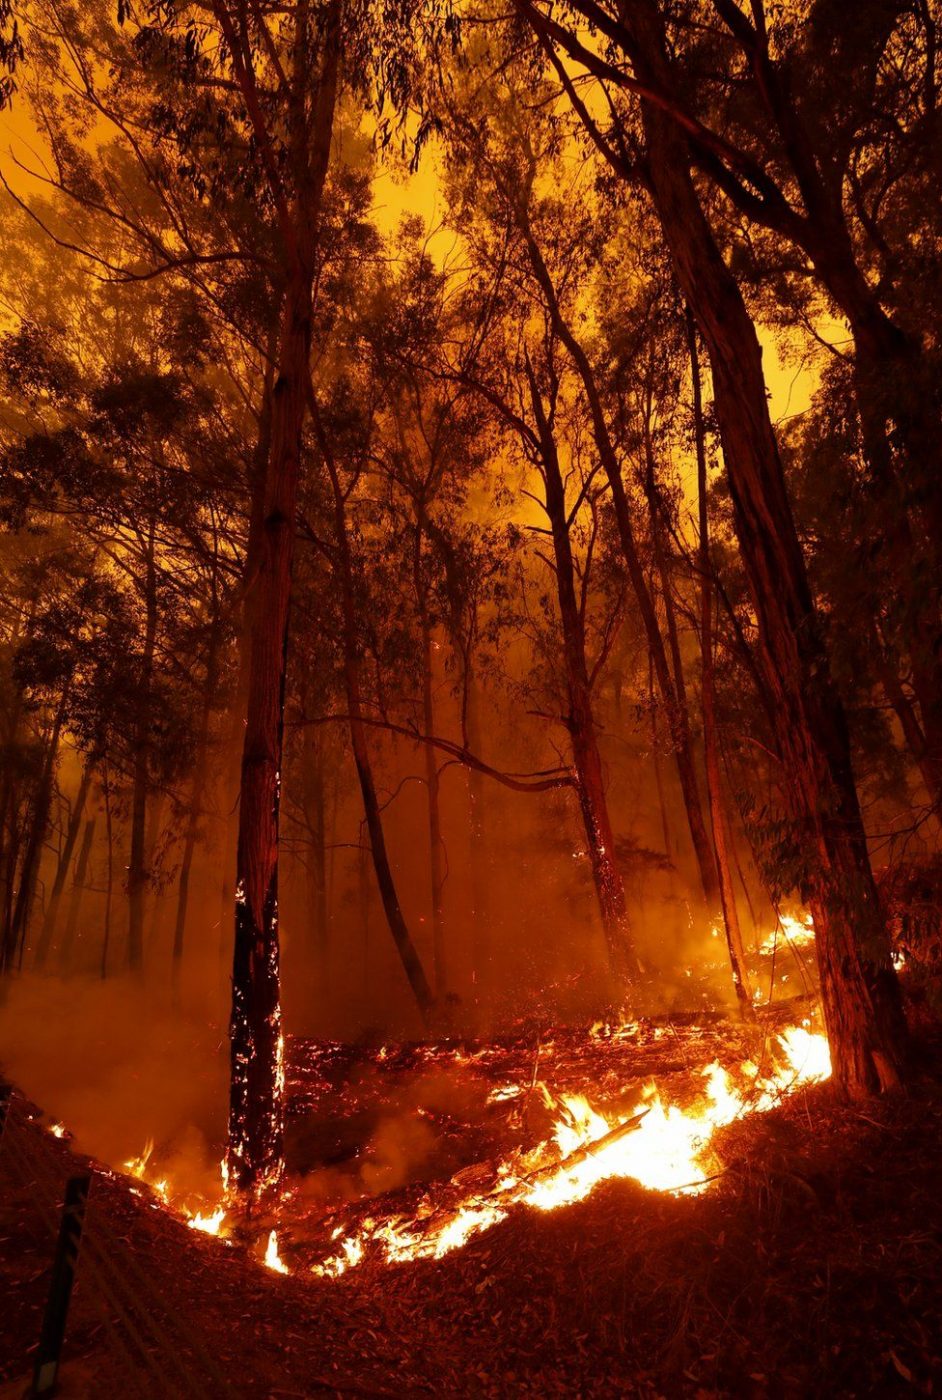 Catastrophic bushfires